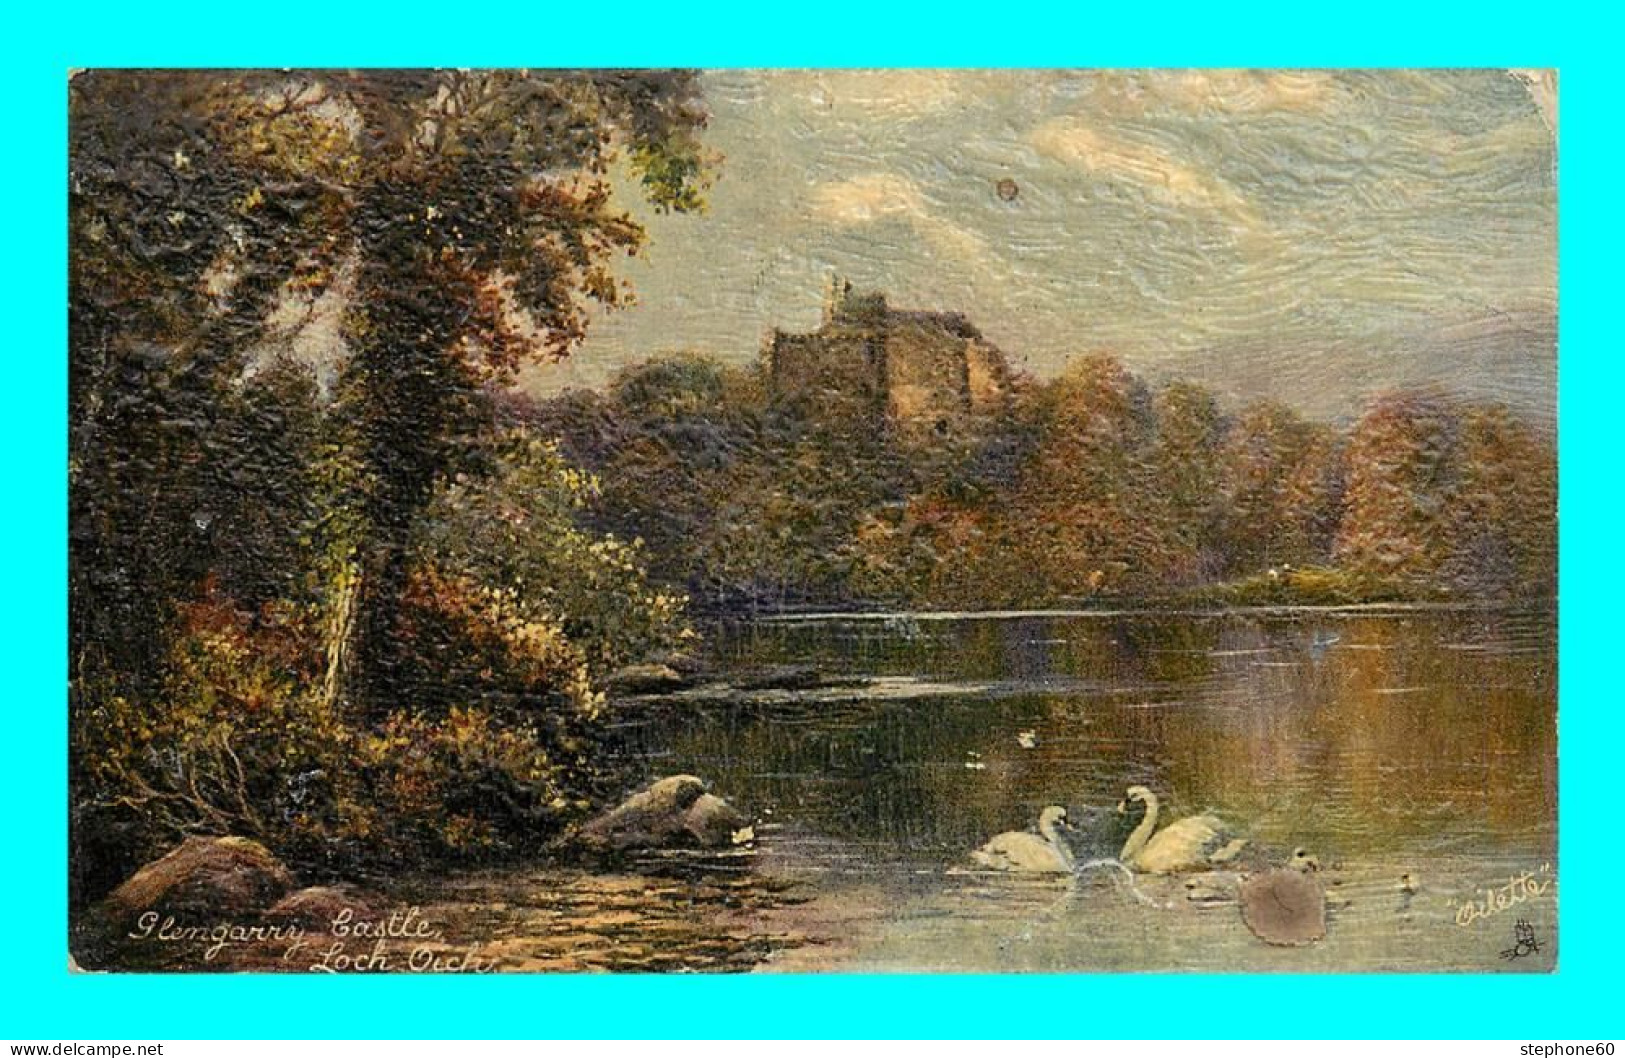 A912 / 171  Glengarry Castle - Raphael Tuck OILETTE - Inverness-shire